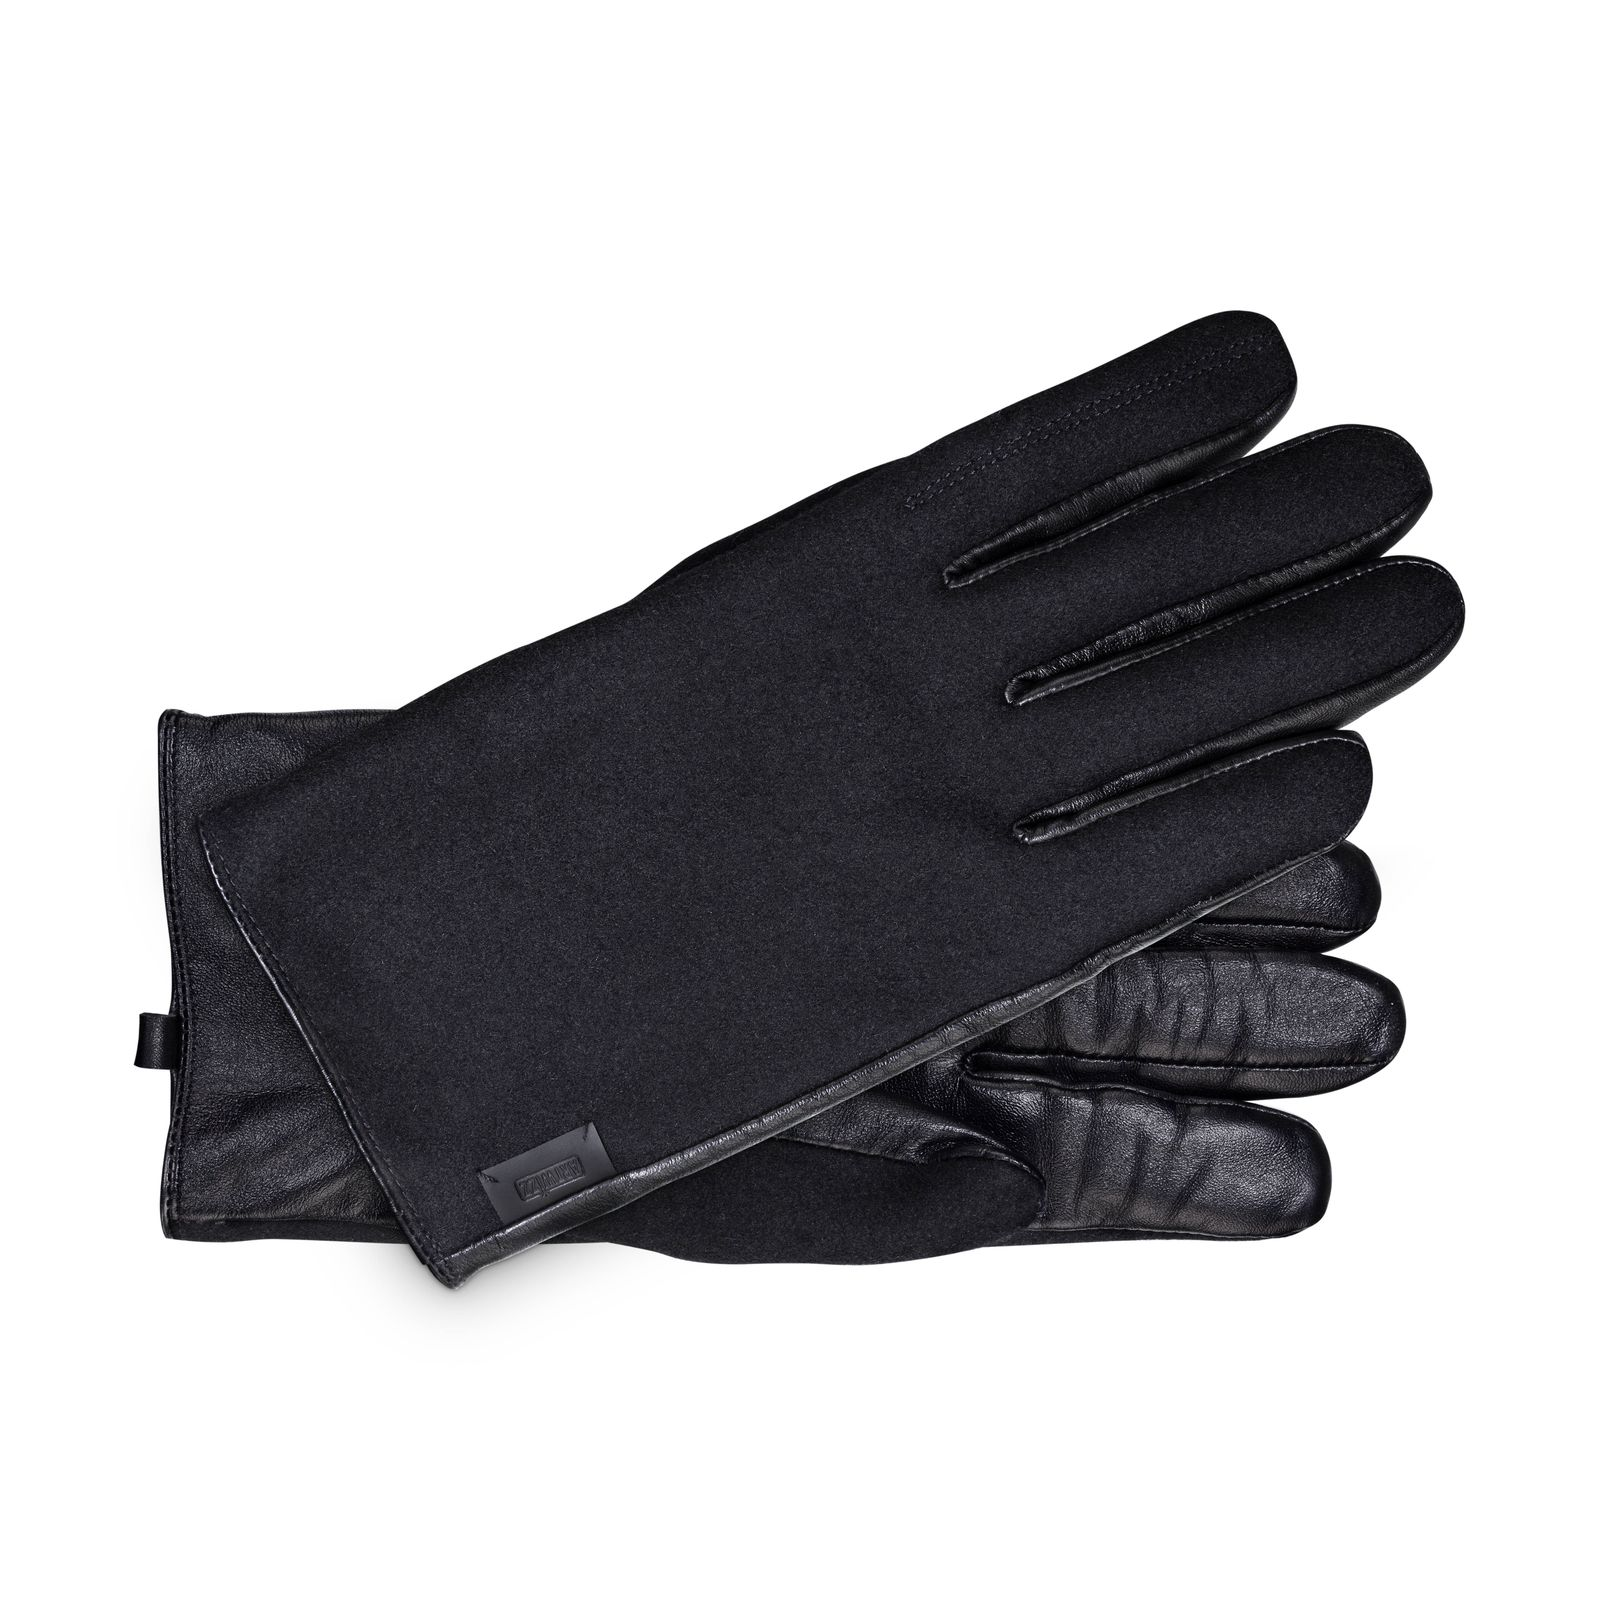 L mit ARTWIZZ SmartGlove® Schwarz Lederhandschuh Touchfunktion